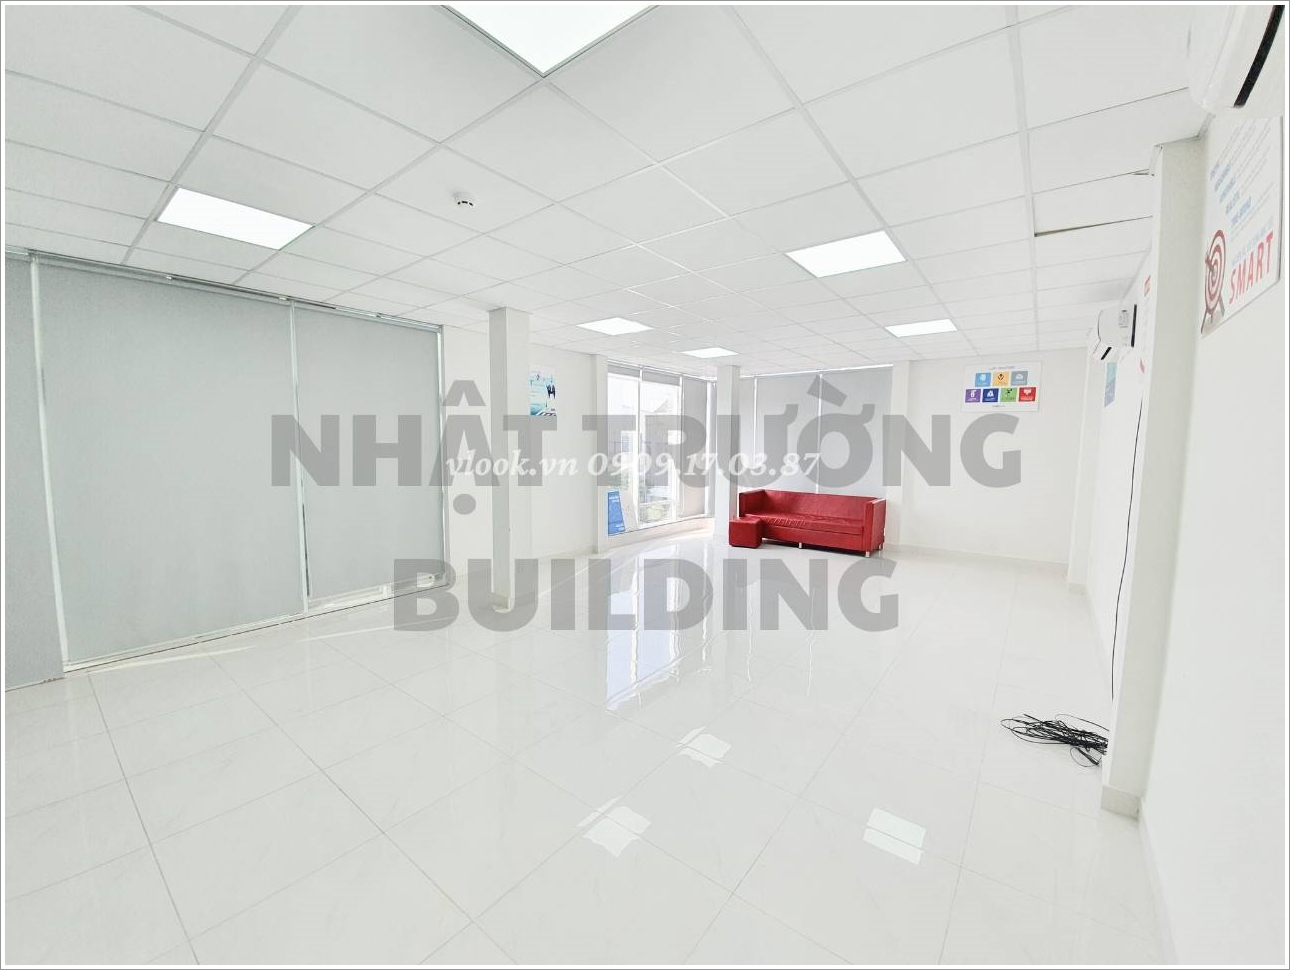 Cao ốc cho thuê văn phòng Nhật Trường Building, Đường A4, Quận Tân Bình - Văn phòng cho thuê TP.HCM - vlook.vn